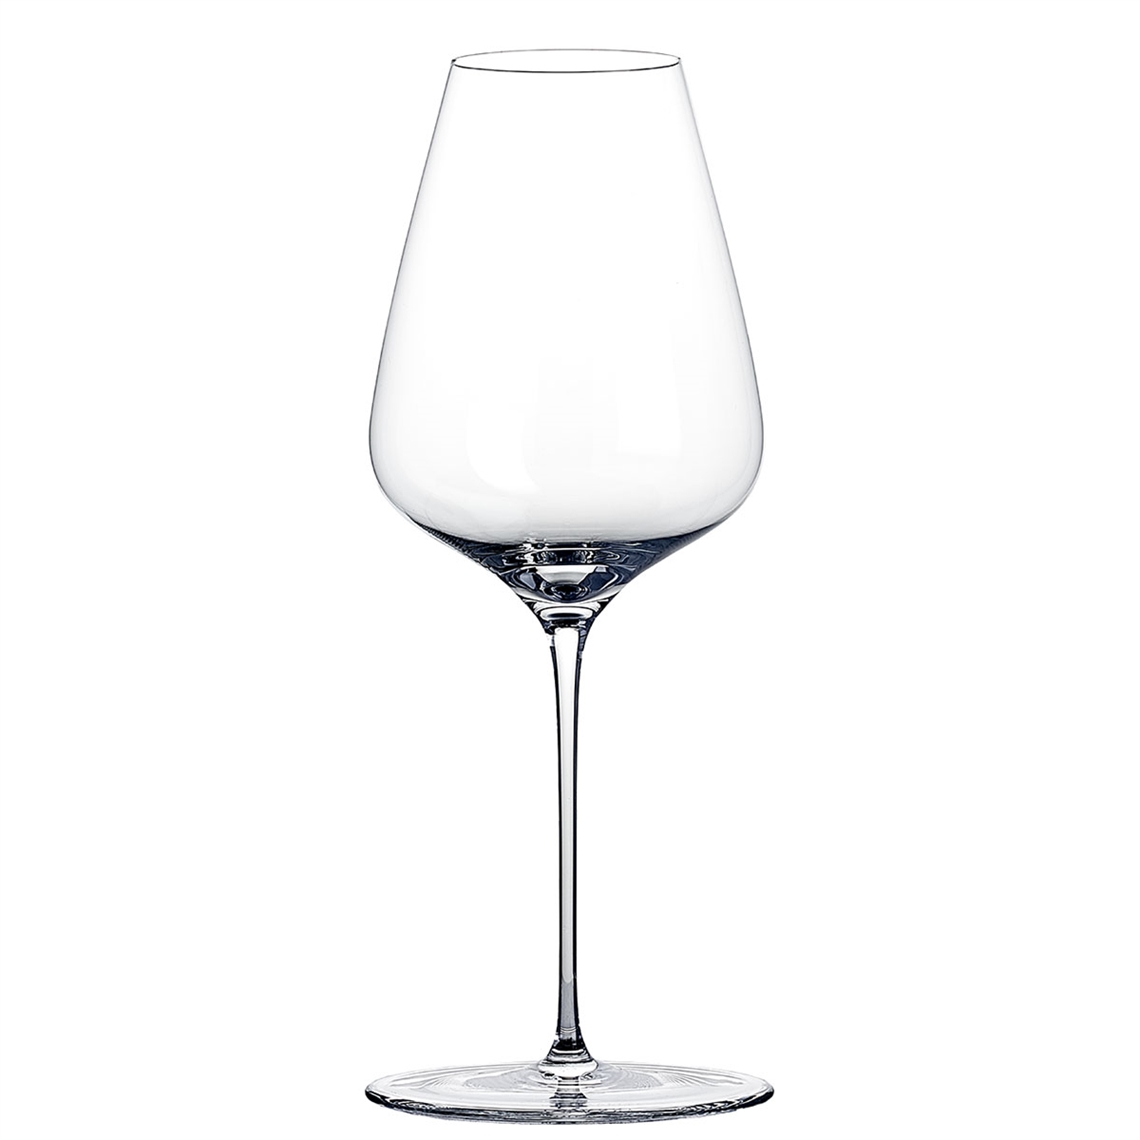 Grassl Glass Vigneron Series Mineralite White Wine Glass - Set of 6